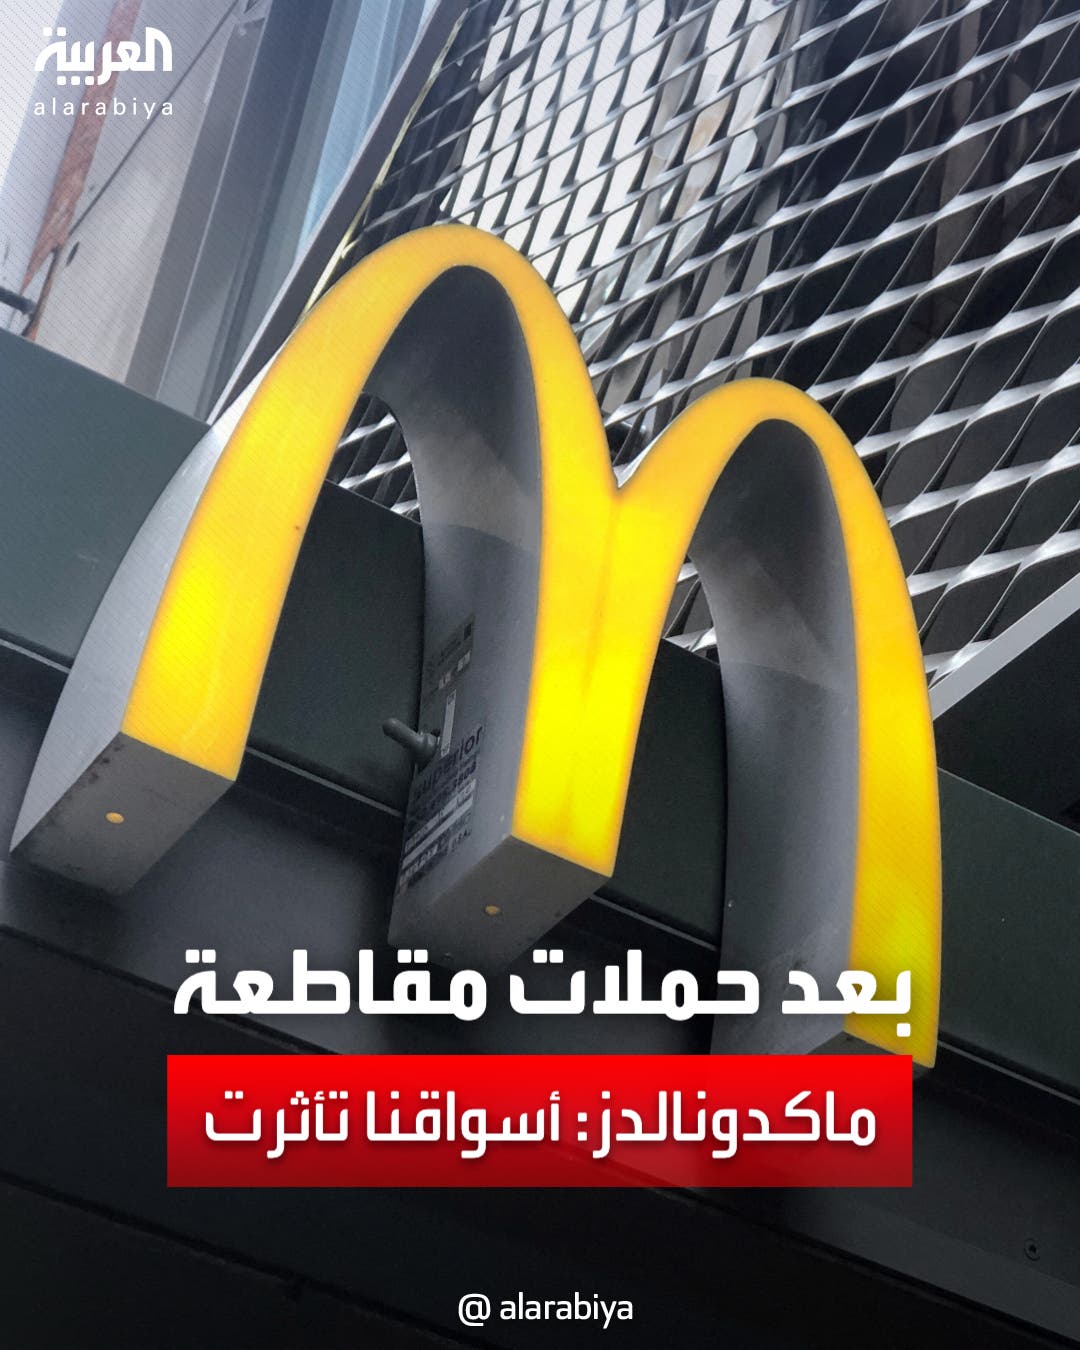 بعد حملات مقاطعة.. ماكدونالدز: بعض أسواقنا في الشرق الأوسط تأثرت